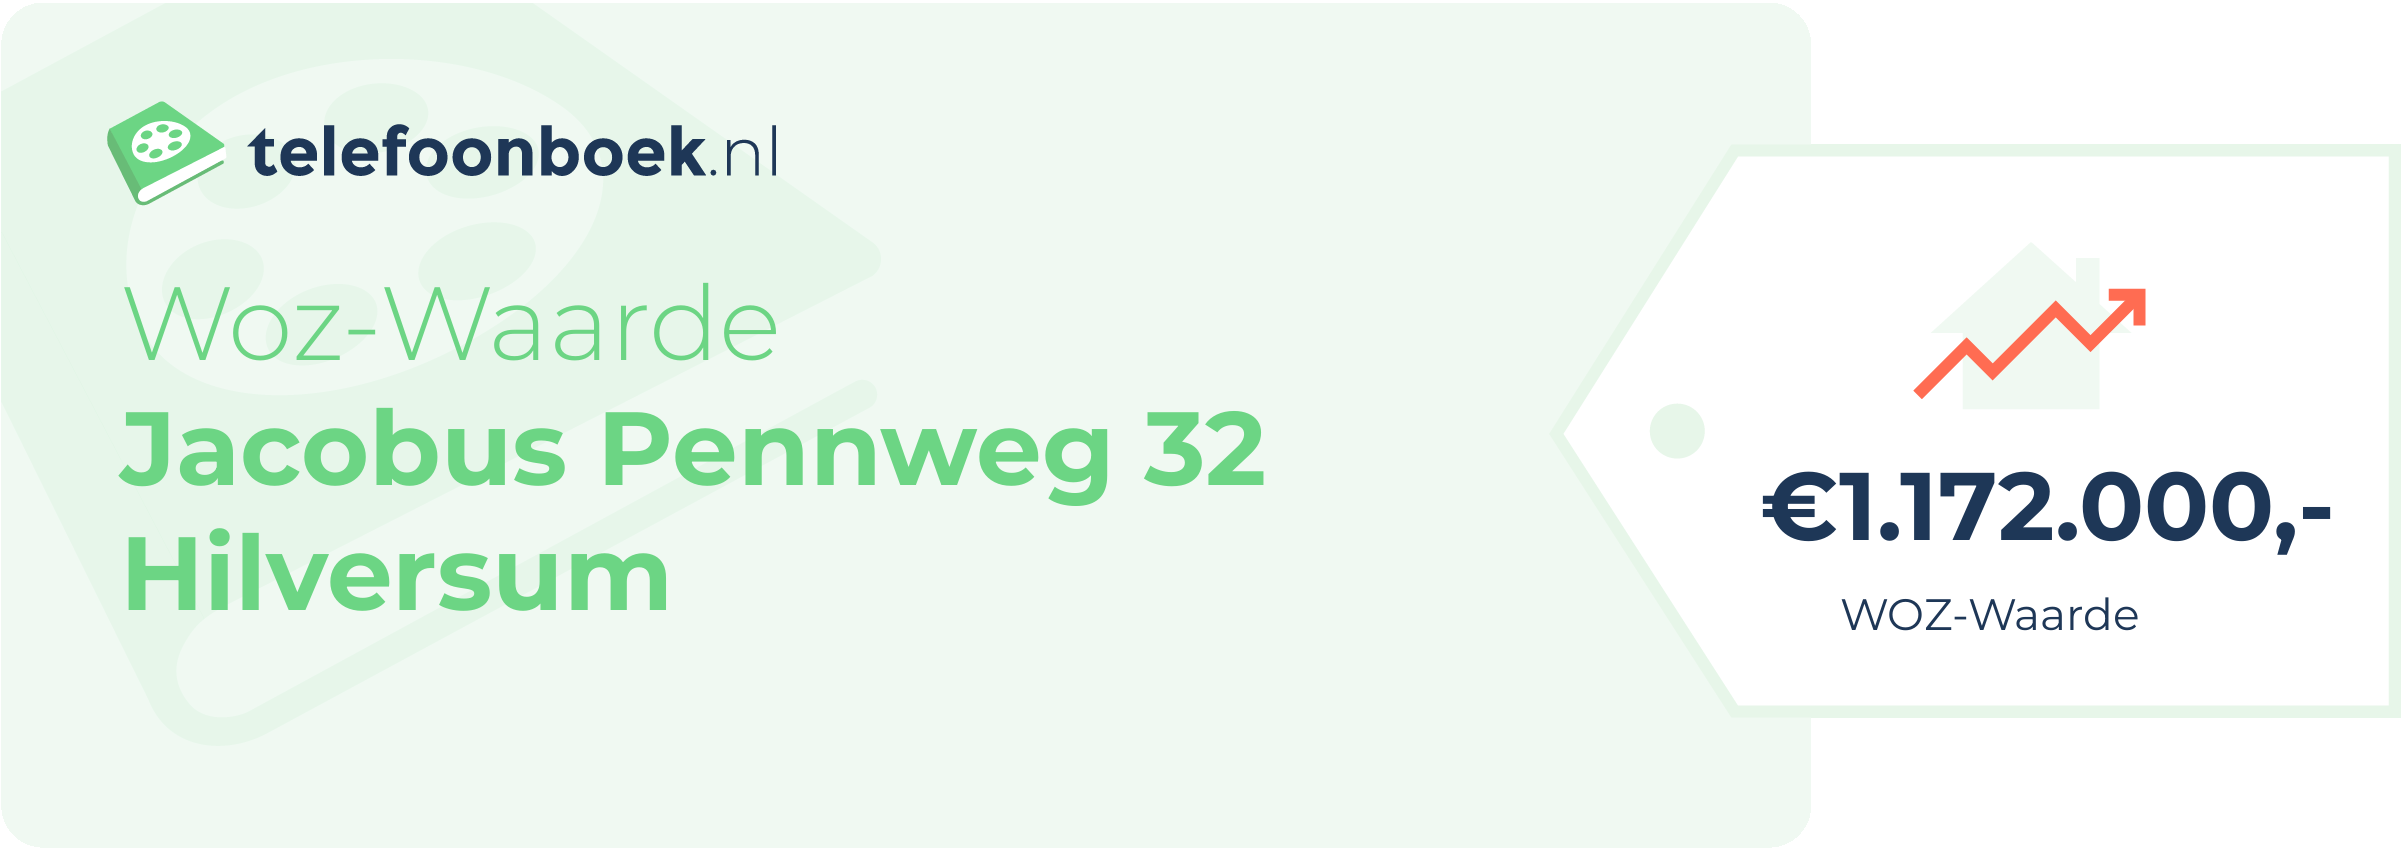 WOZ-waarde Jacobus Pennweg 32 Hilversum